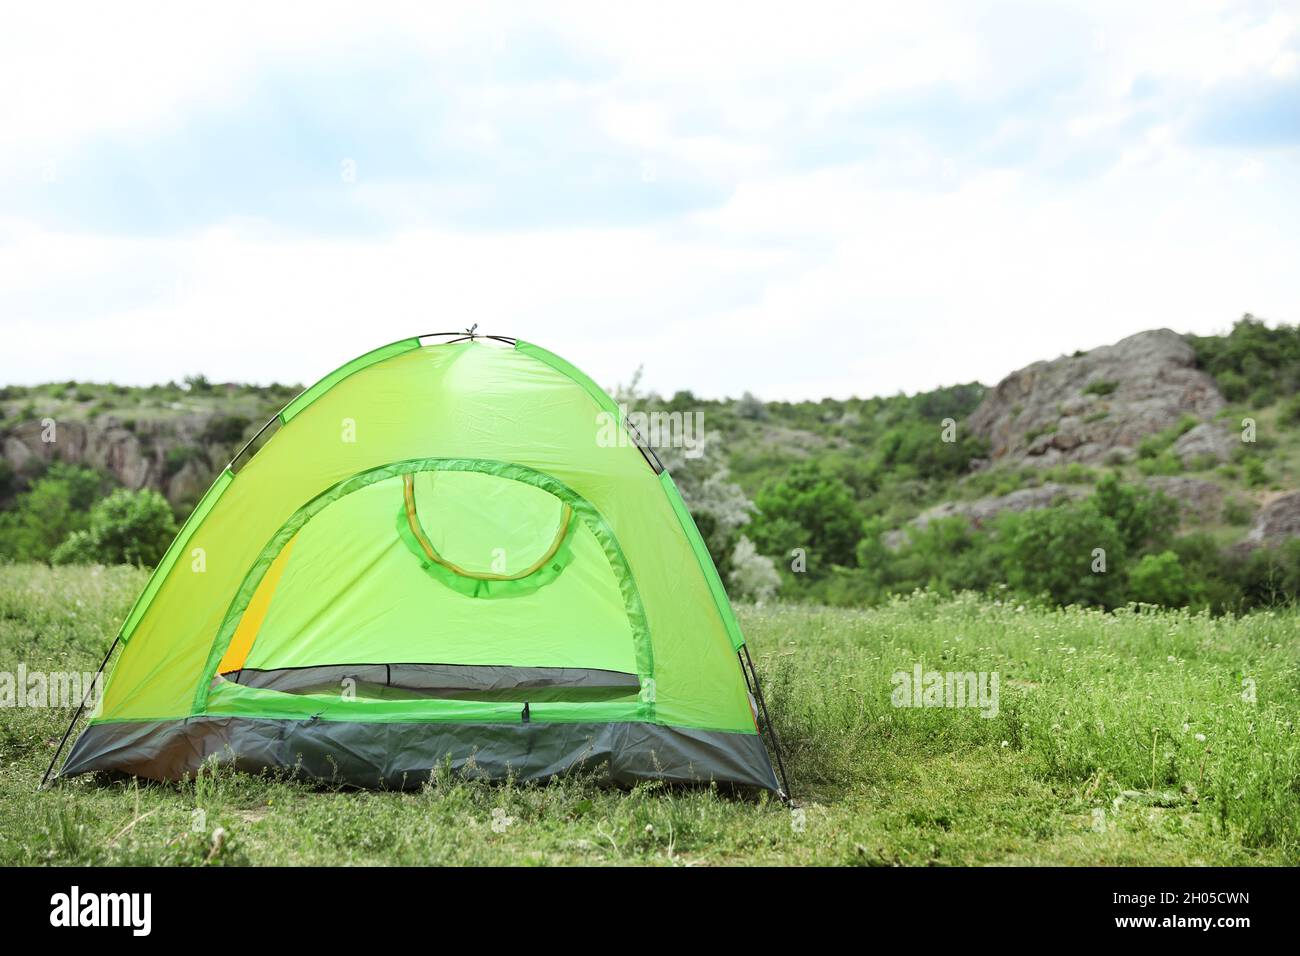 Petite tente touristique dans le désert.Saison de camping Photo Stock -  Alamy